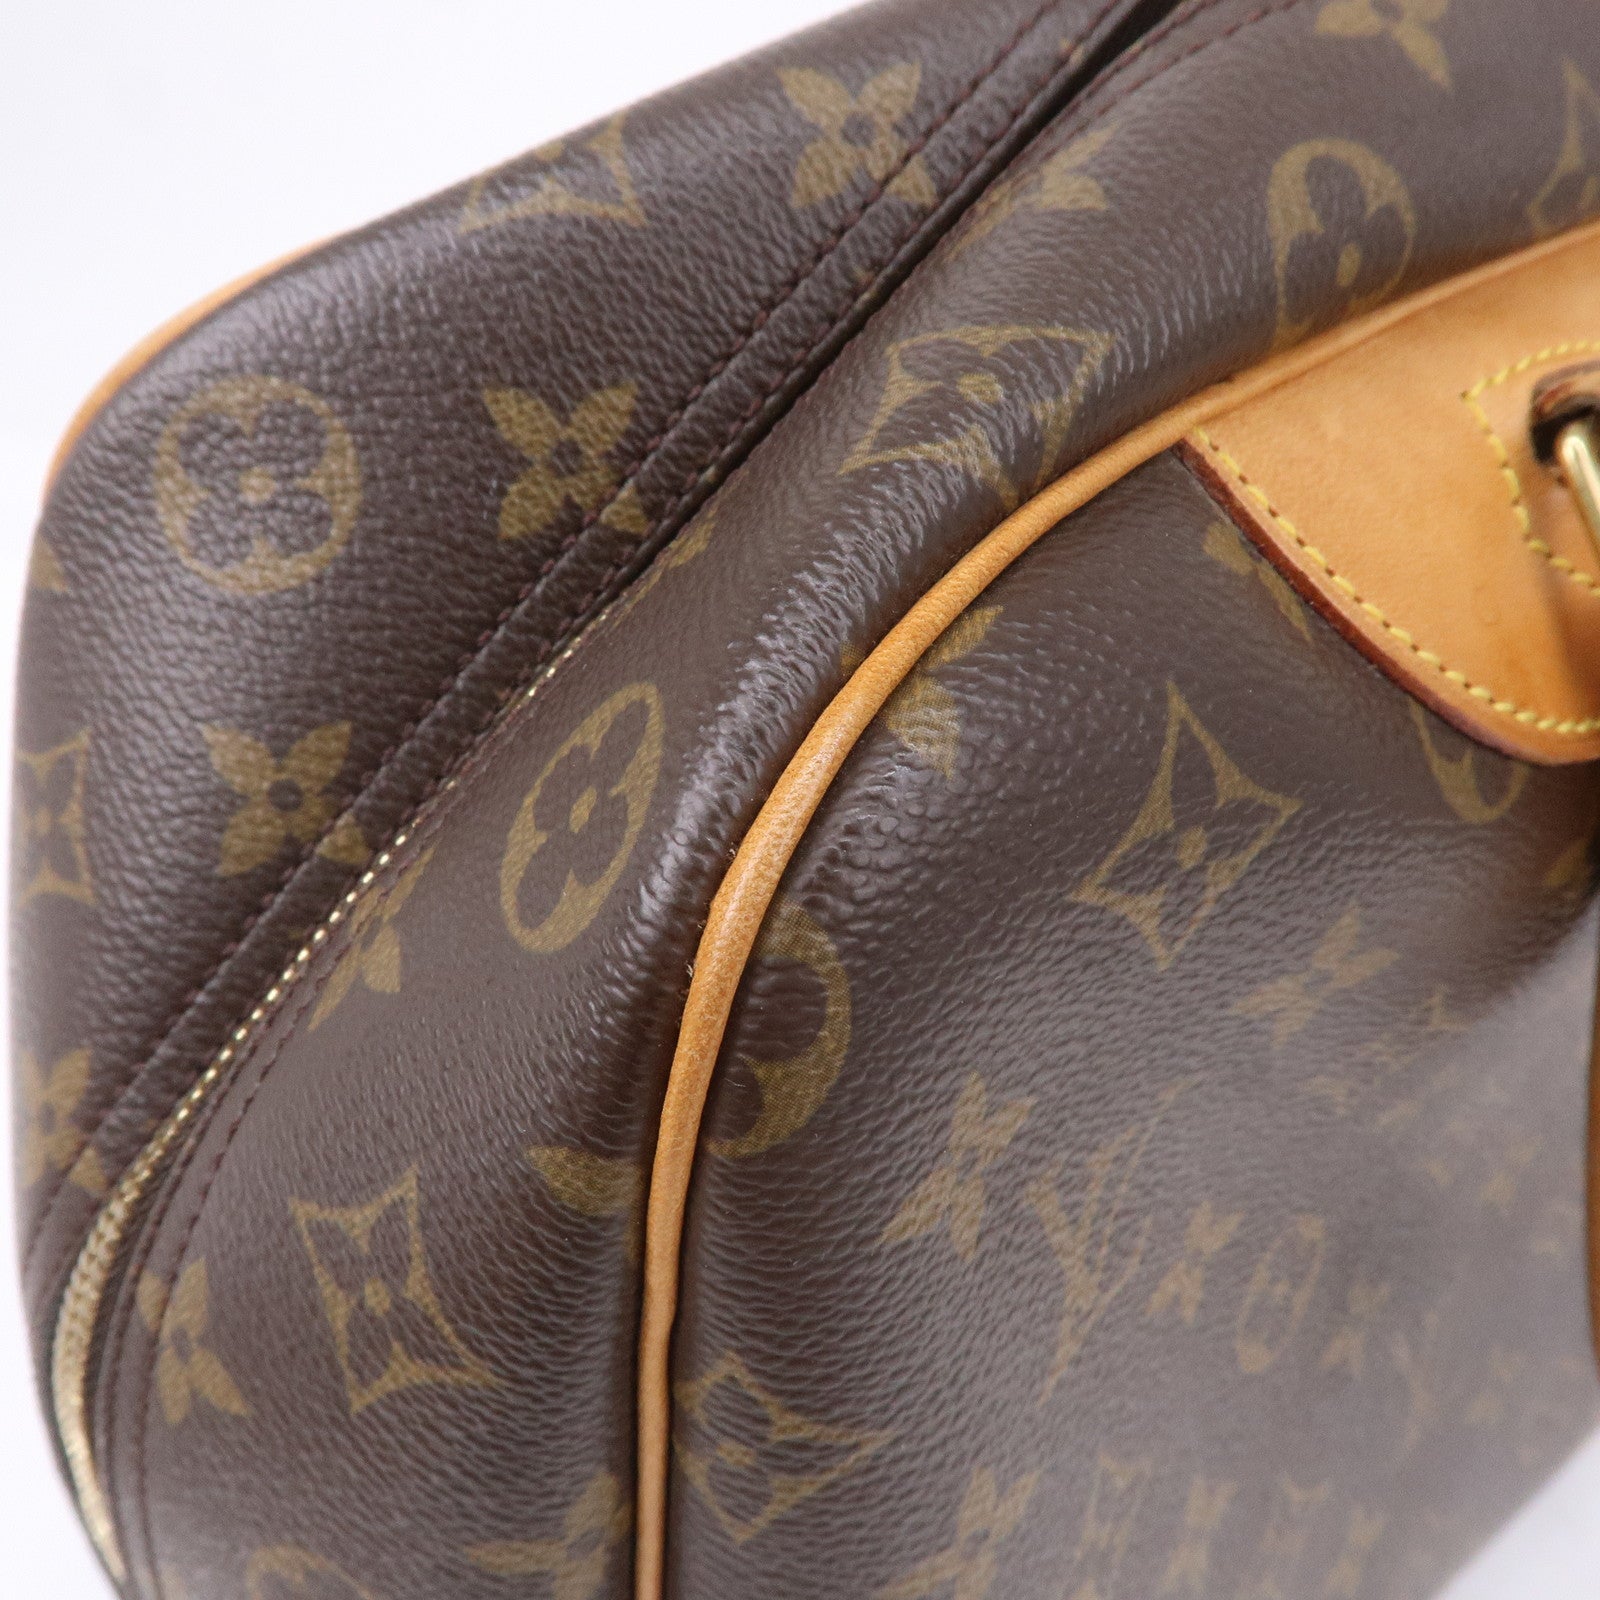 Louis Vuitton Monogram Deauville - Brown Handle Bags, Handbags - LOU818687